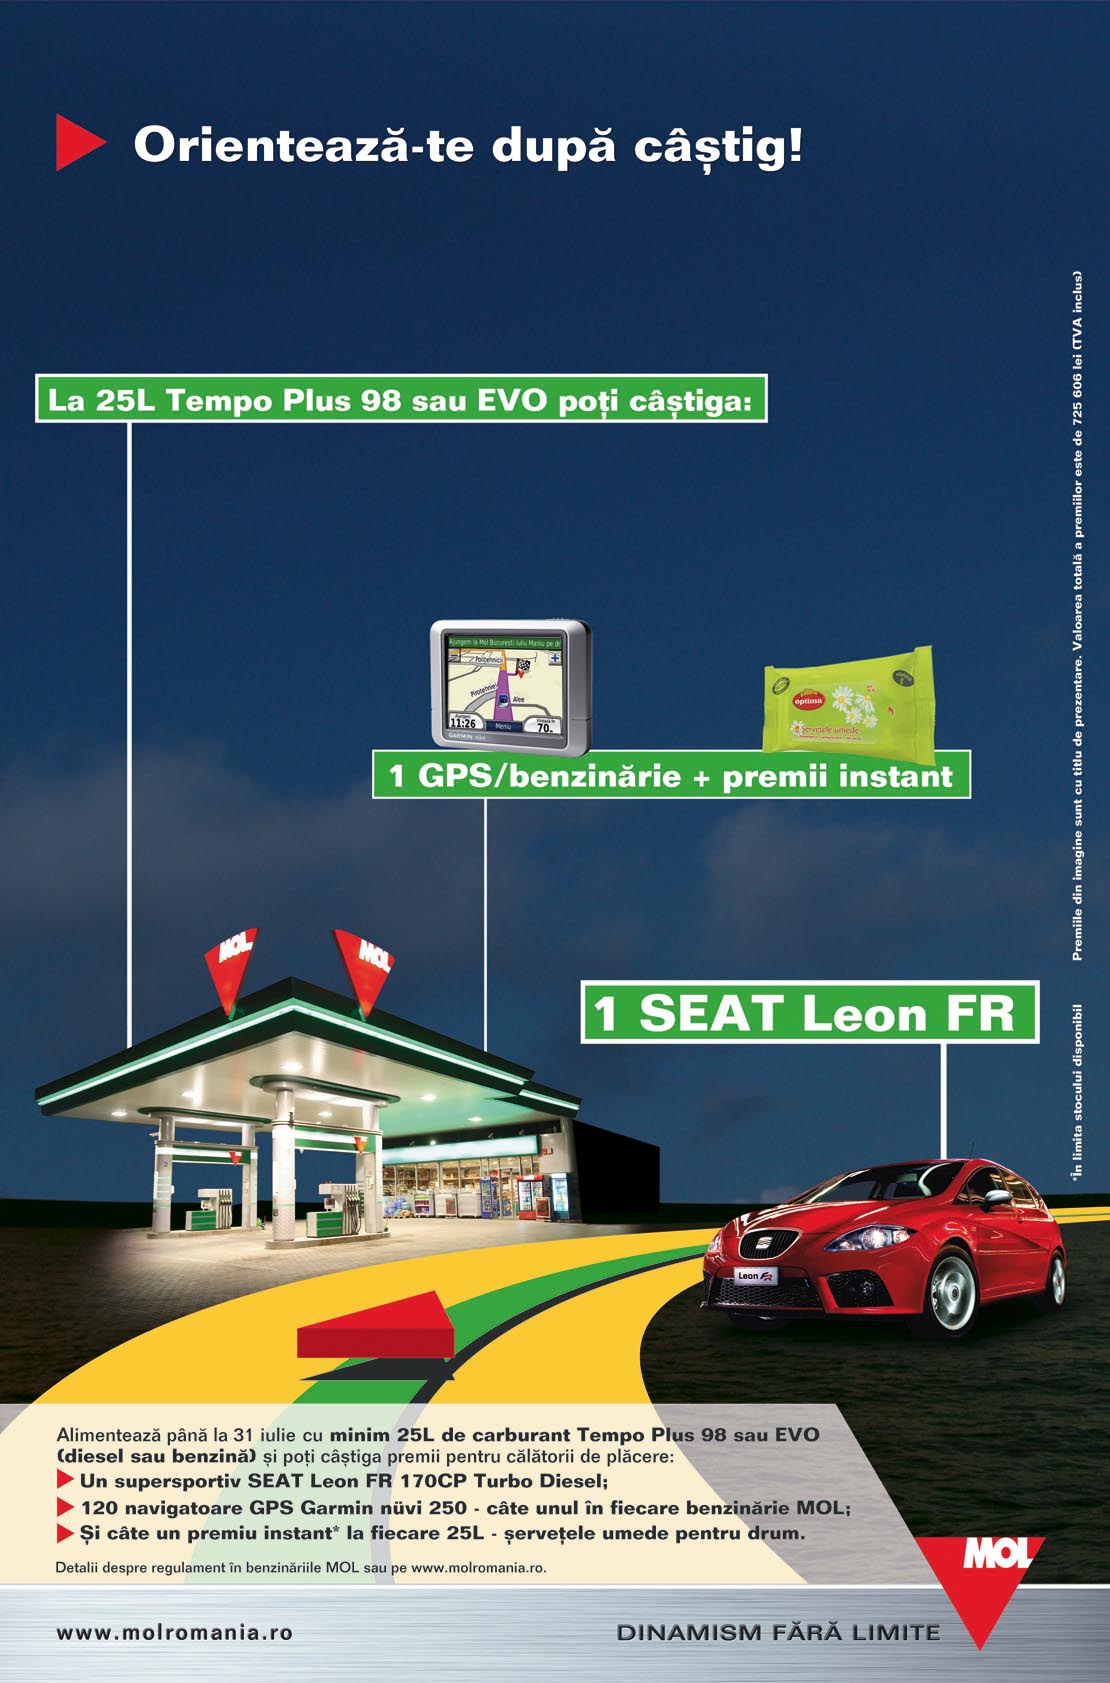 Mol - Seat Leon promo campaign